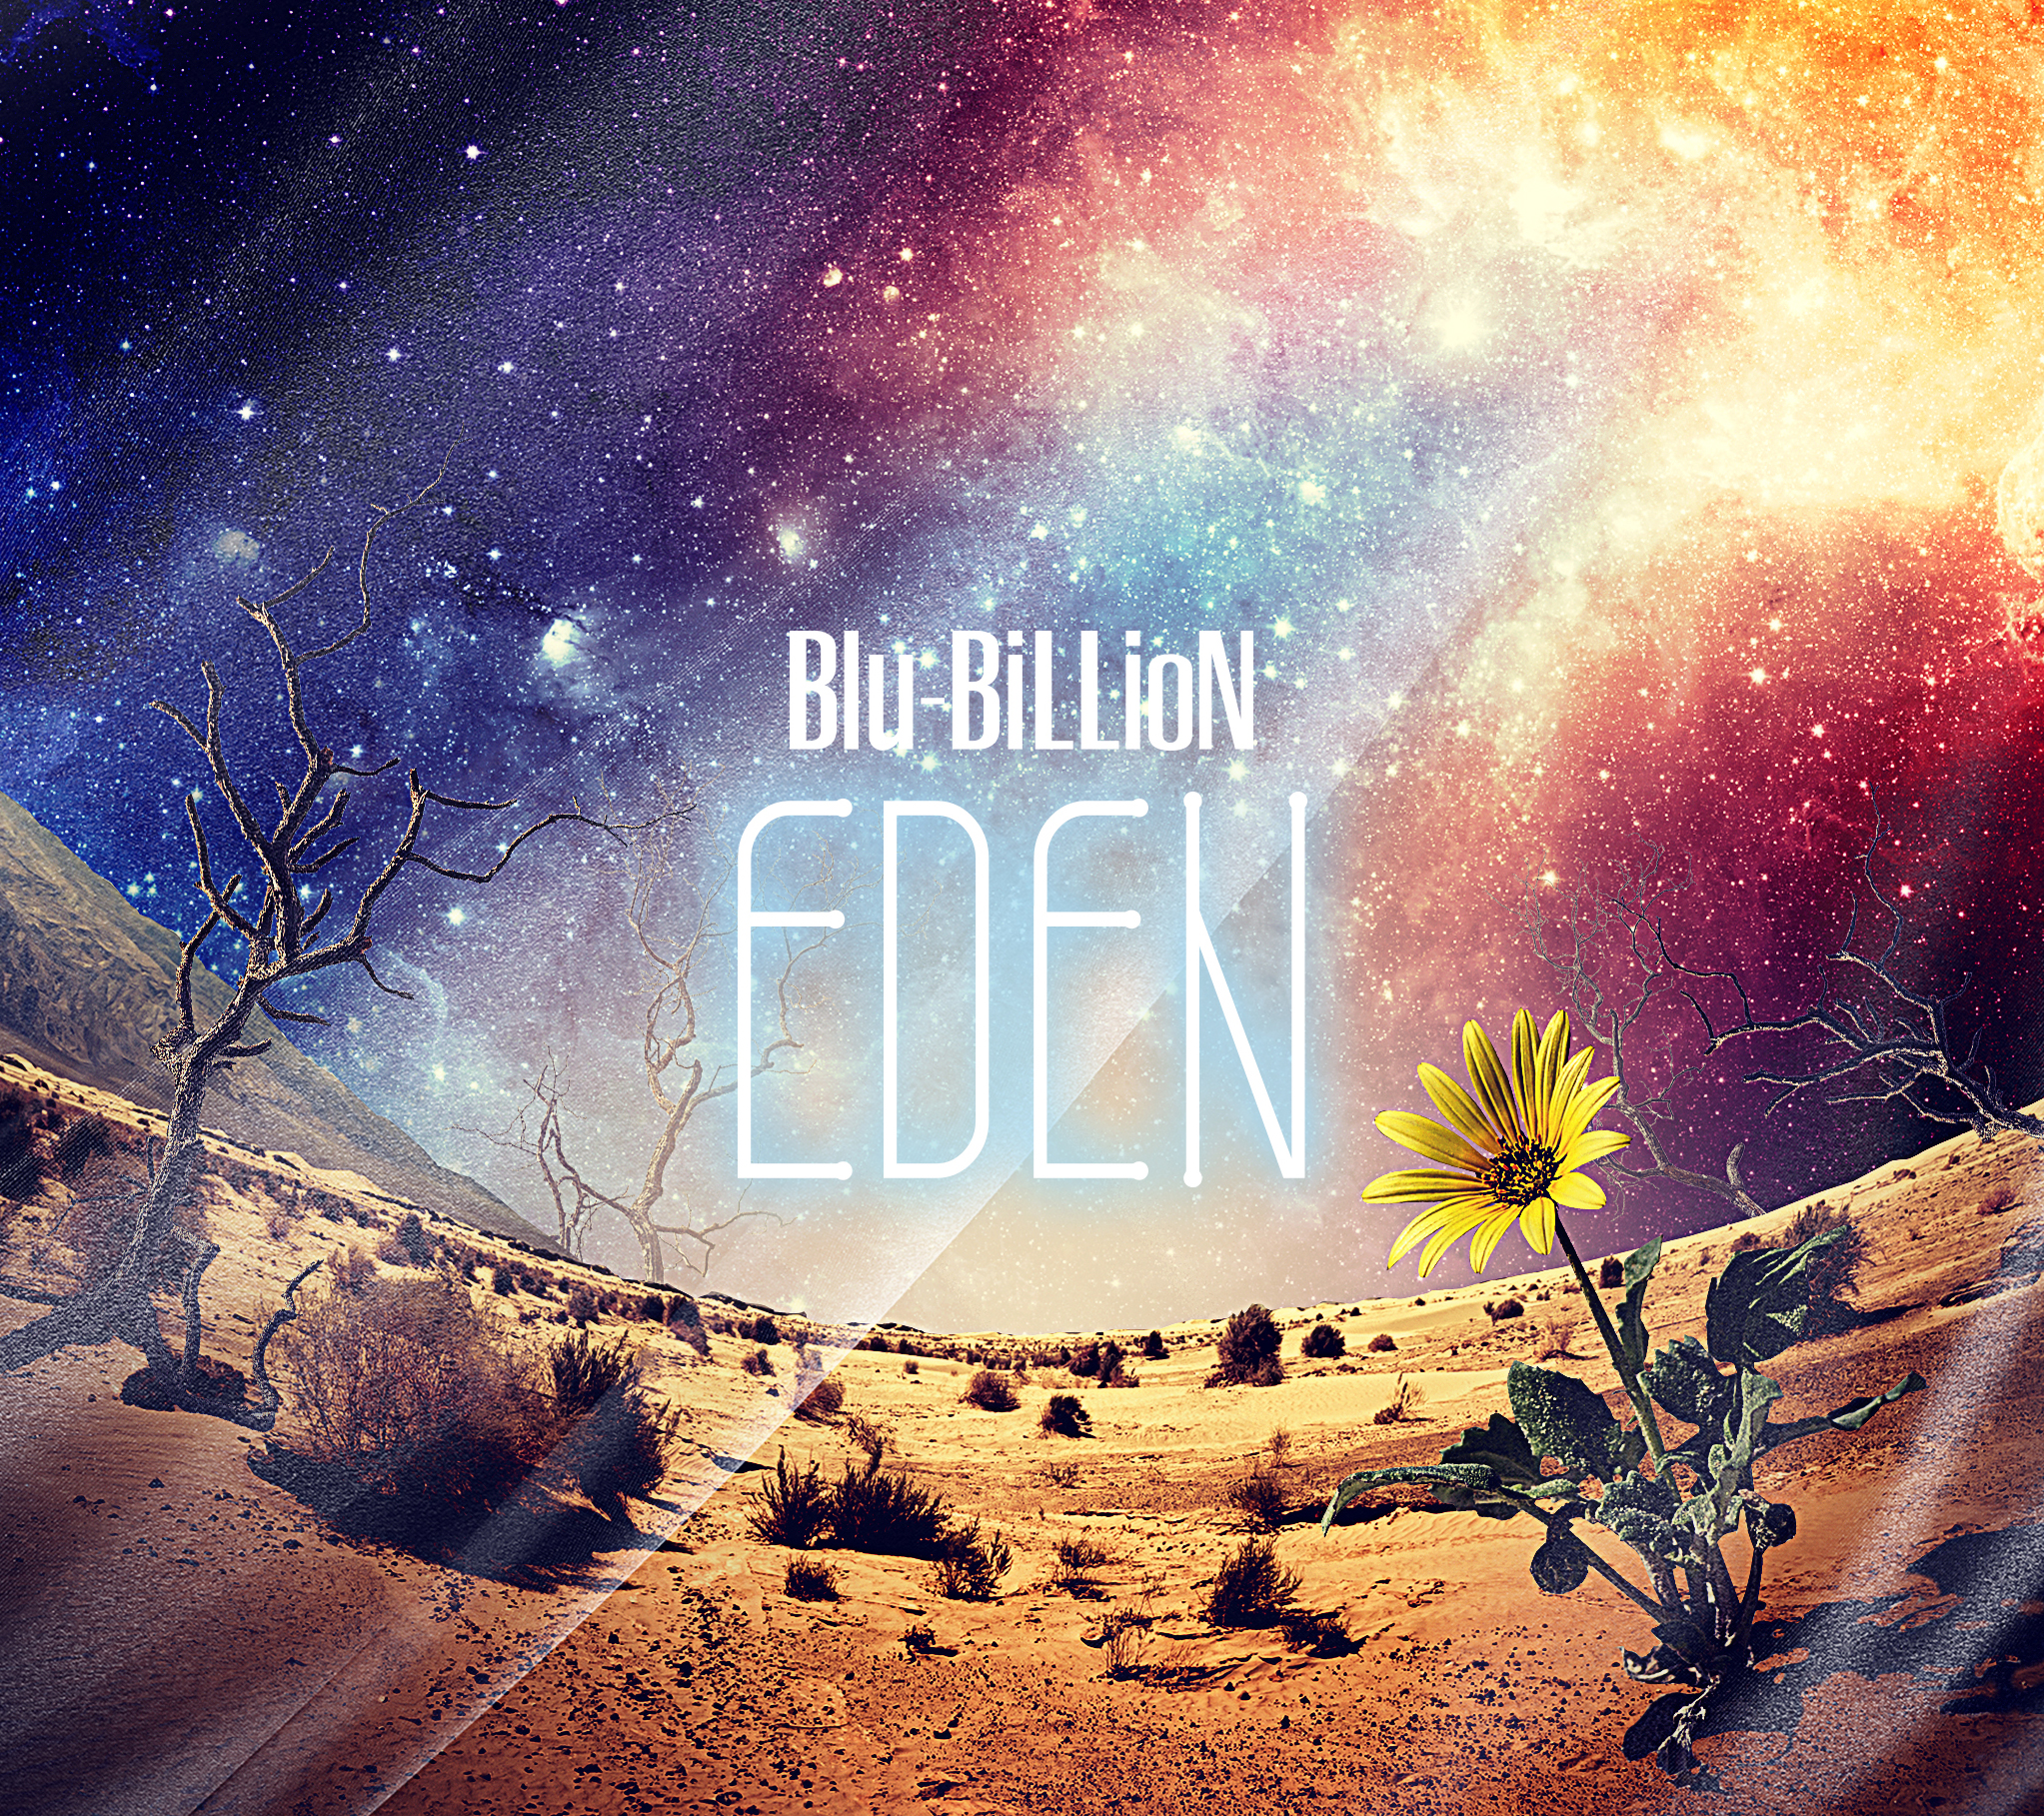 Blu-BiLLioN ( ブルービリオン )  の CD EDEN【完全生産限定豪華盤】